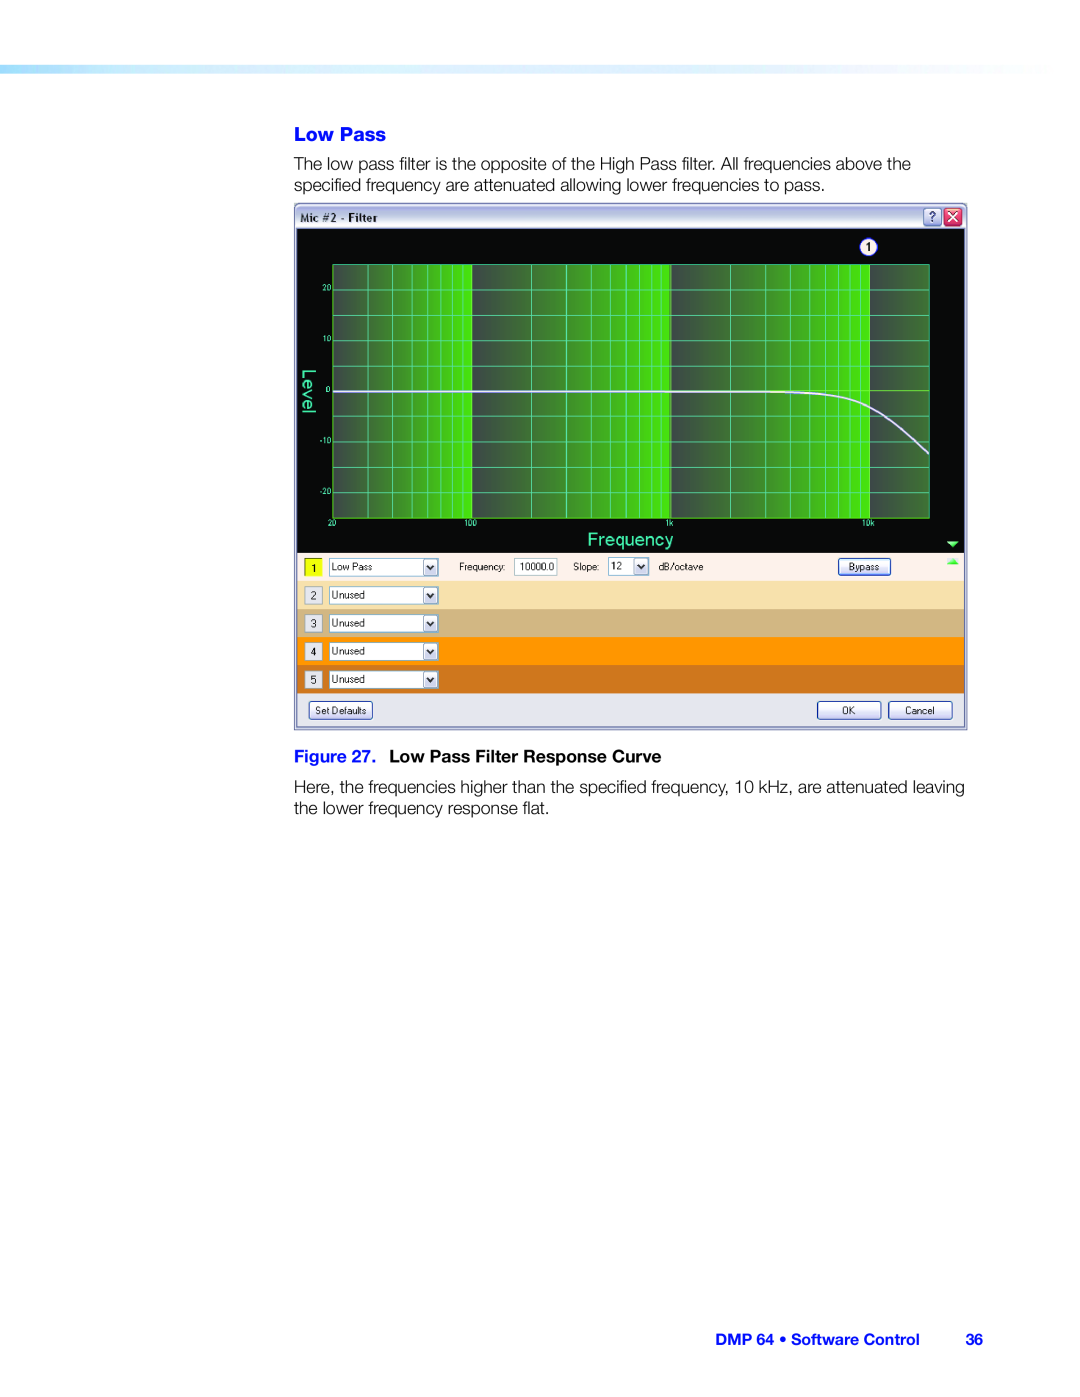 Extron electronic DMP 64 manual Low Pass Filter Response Curve 